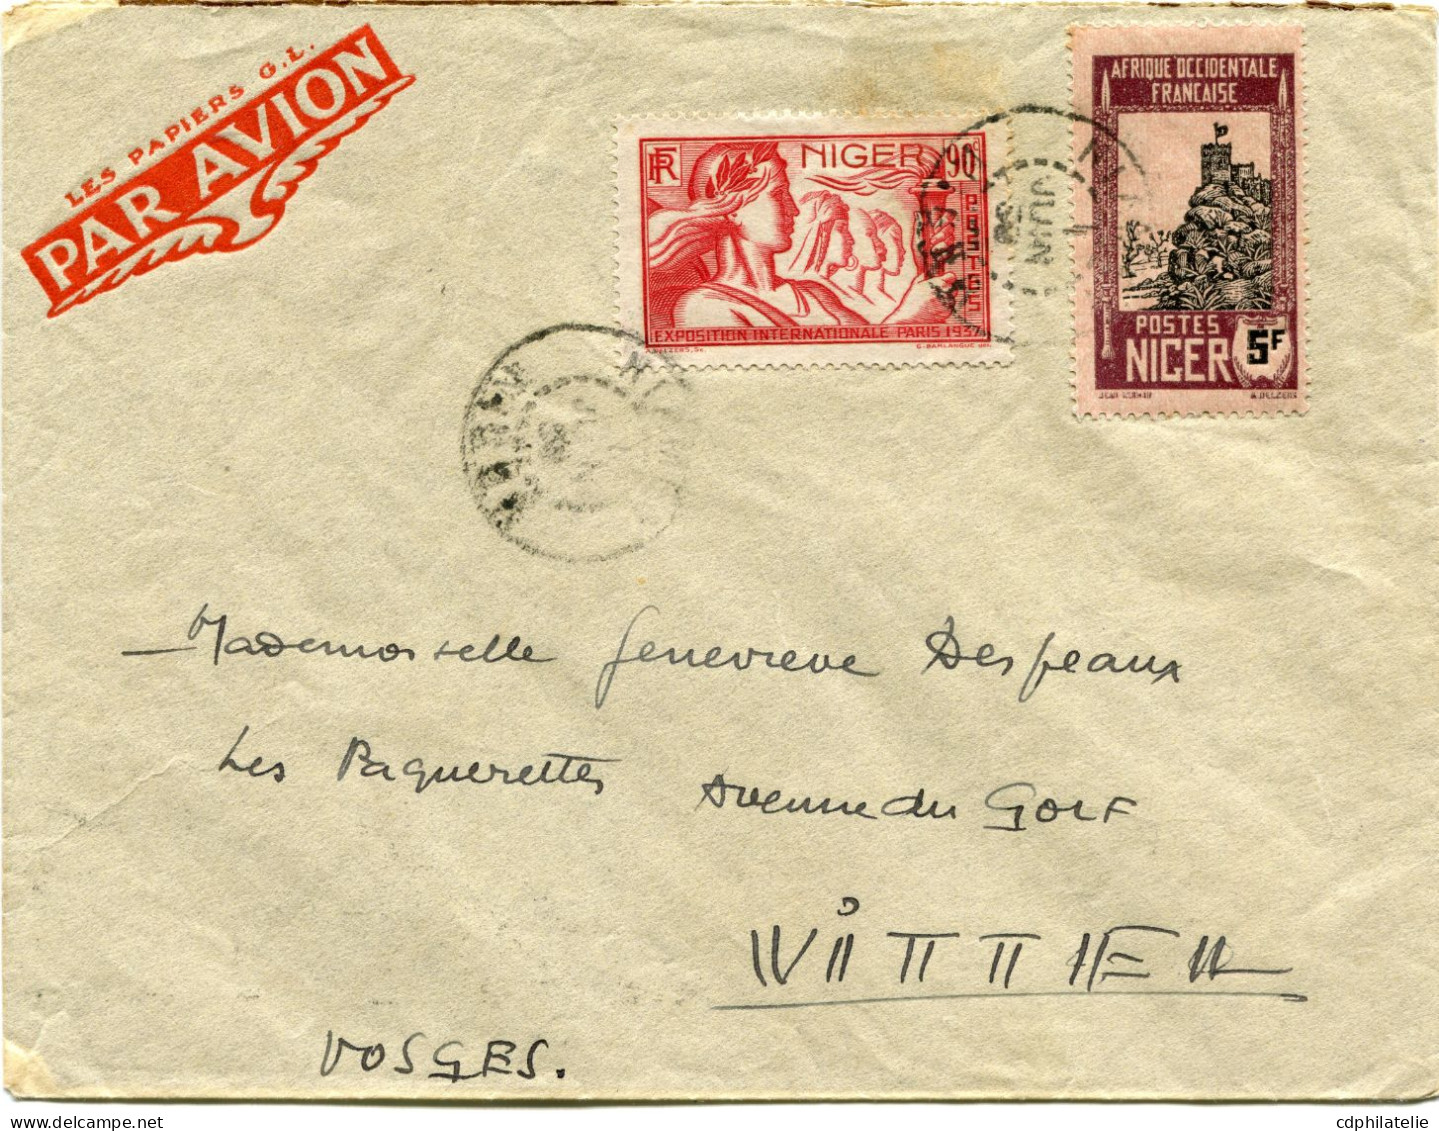 NIGER LETTRE PAR AVION DEPART NIAMEY 1 JUIN 39 NIGER POUR LA FRANCE - Lettres & Documents